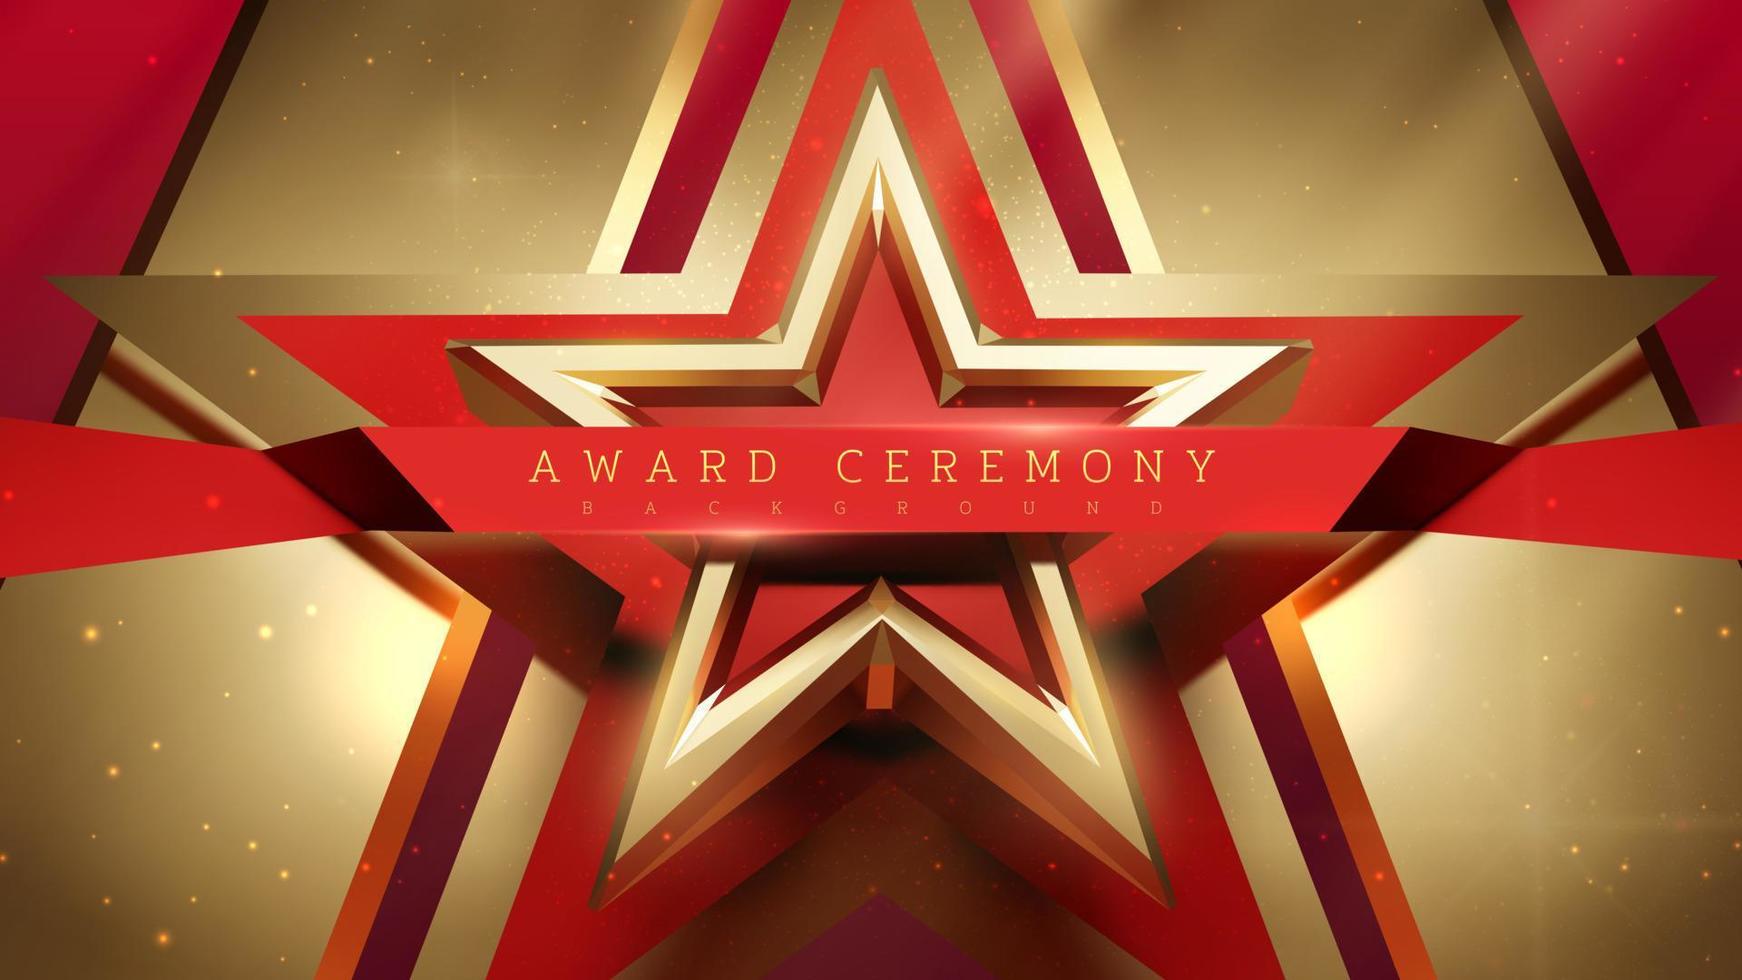 sfondo cerimonia di premiazione con stella d'oro 3d con decorazione a nastro rosso con elementi ad effetto luce. vettore